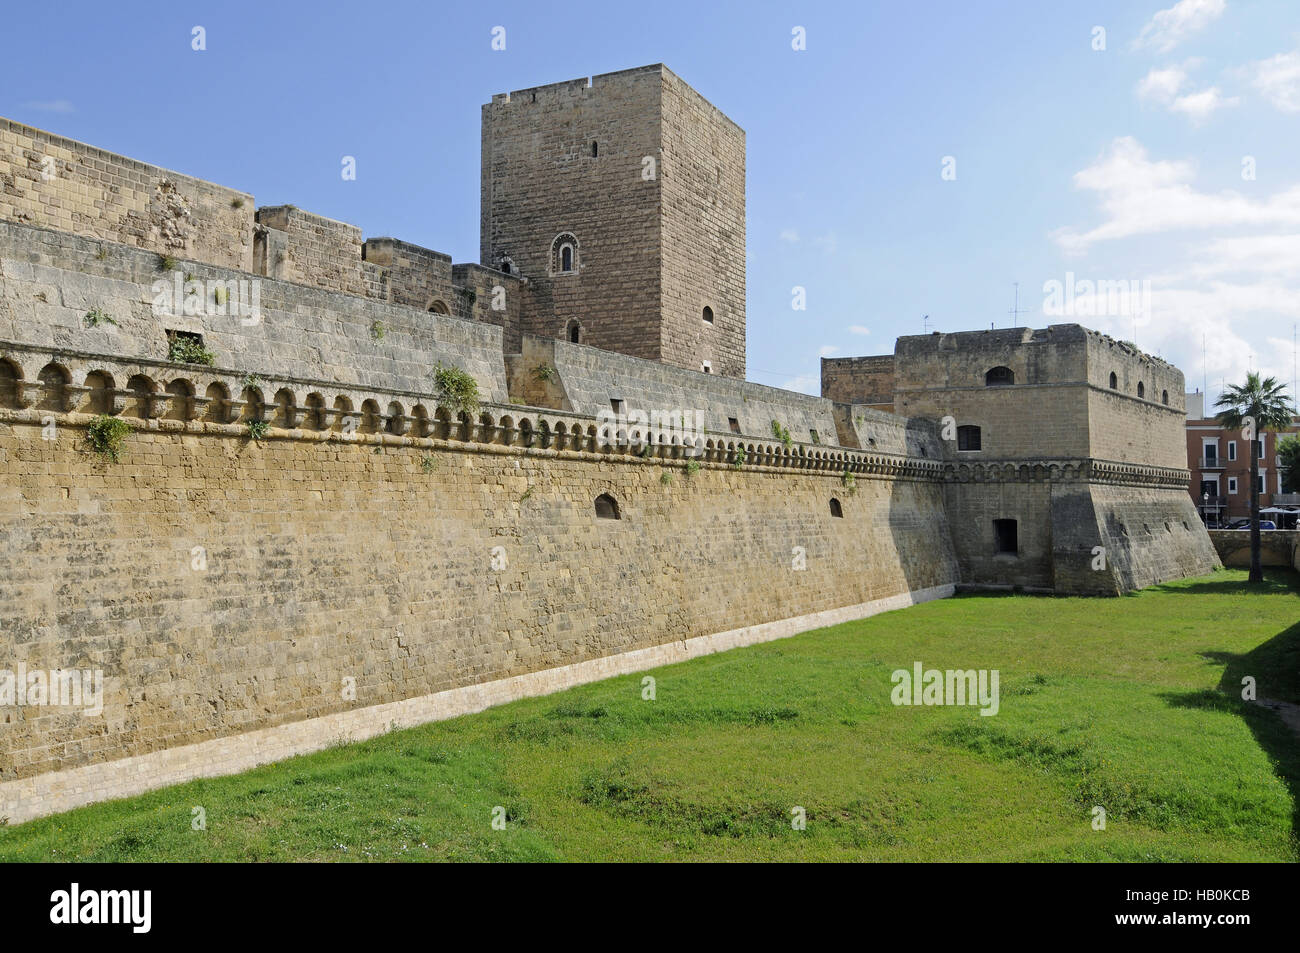 Castello Normanno Svevo, castle, Bari, Italy Stock Photo